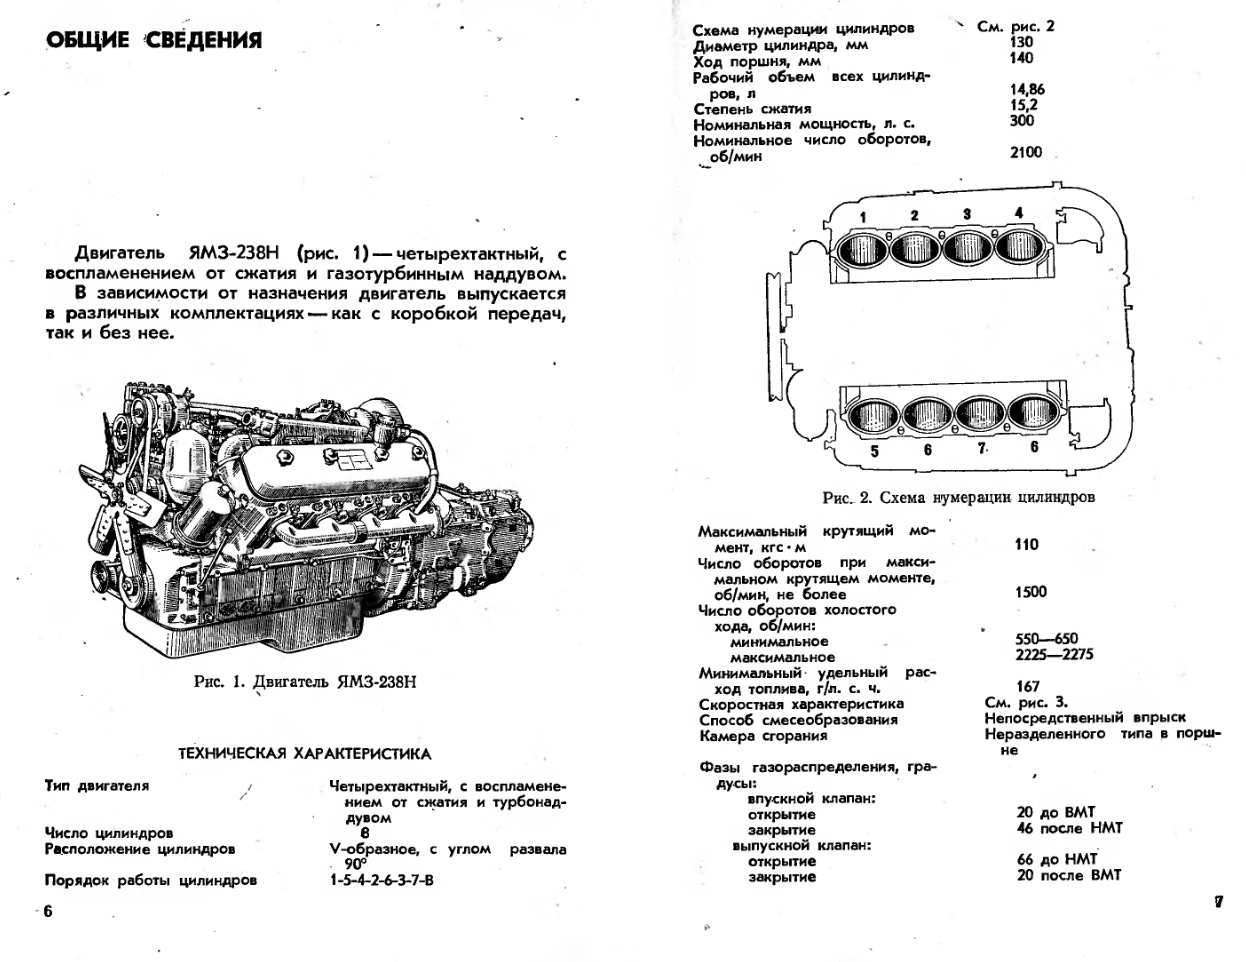 ЯМЗ-238Н. Двигатель ЯМЗ-238Н. Инструкция по эксплуатации. Издание 2. 1978